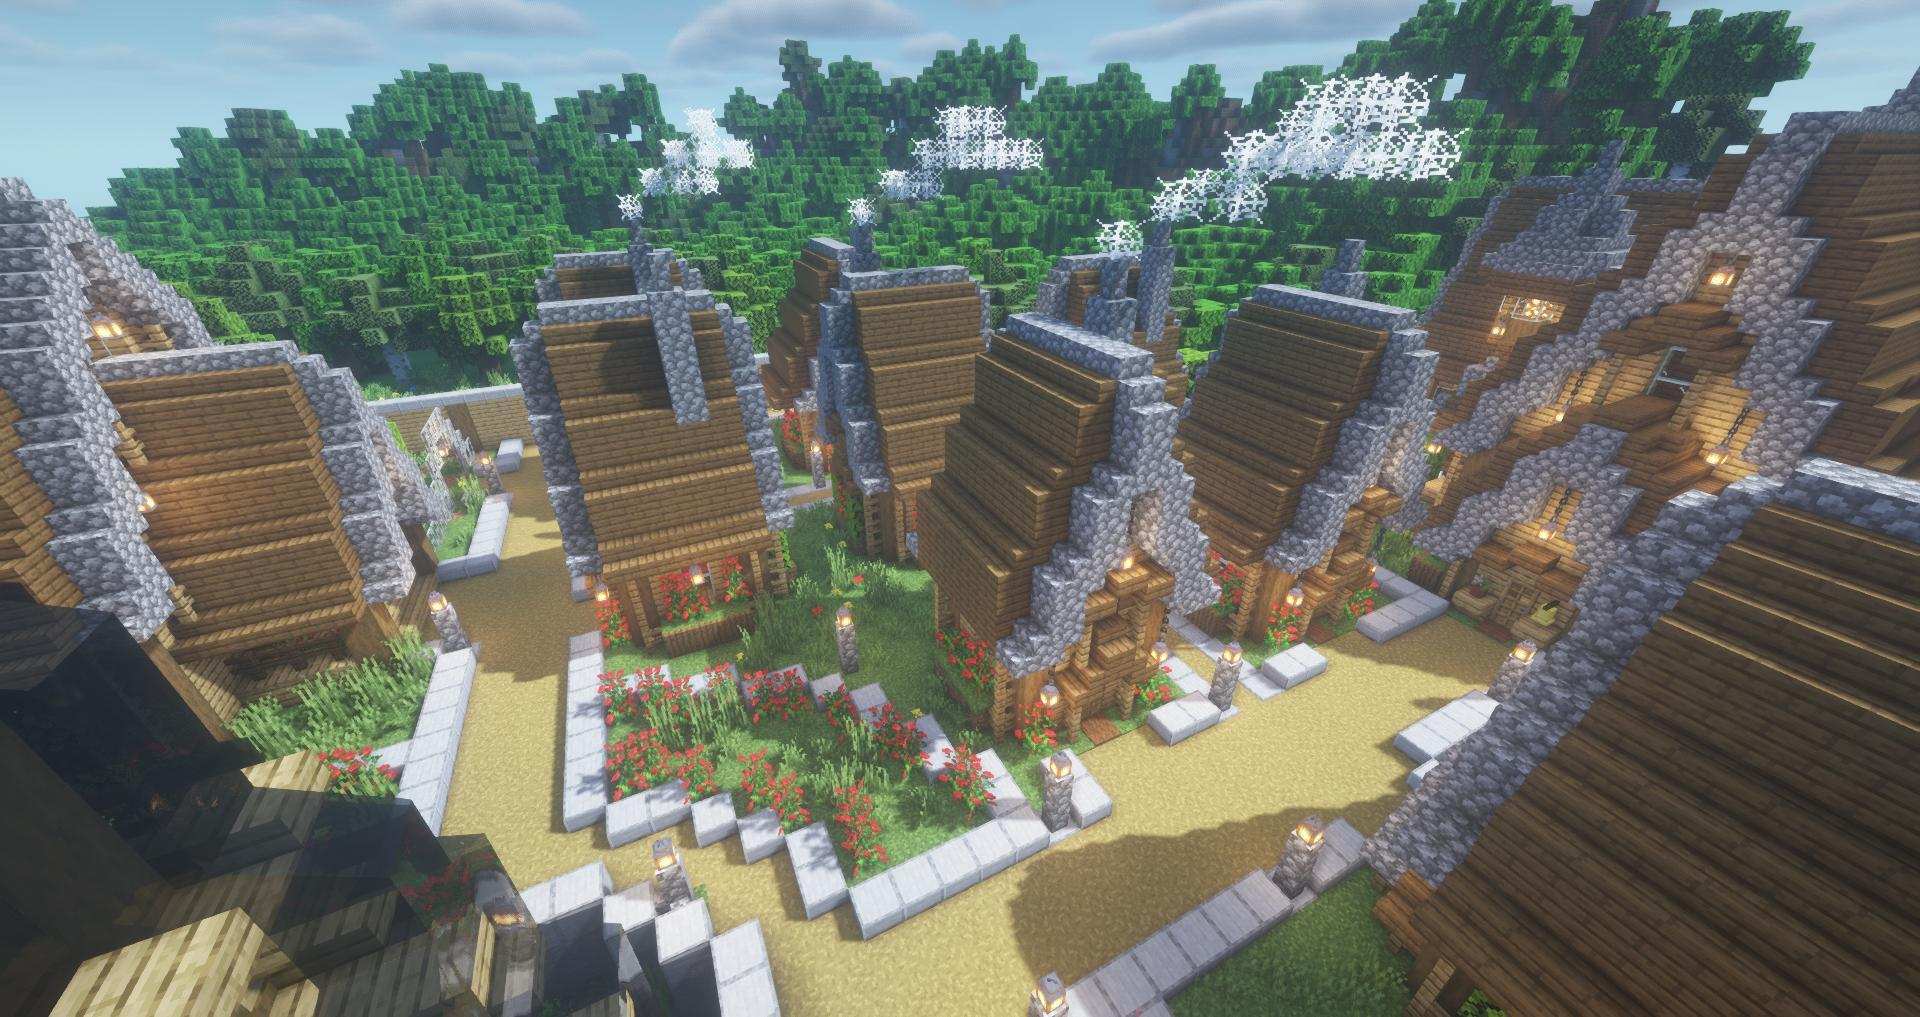 心得 餅乾貓的建築分享 中世紀村莊 島嶼建築1 圖多注意 Minecraft 我的世界 當個創世神 哈啦板 巴哈姆特